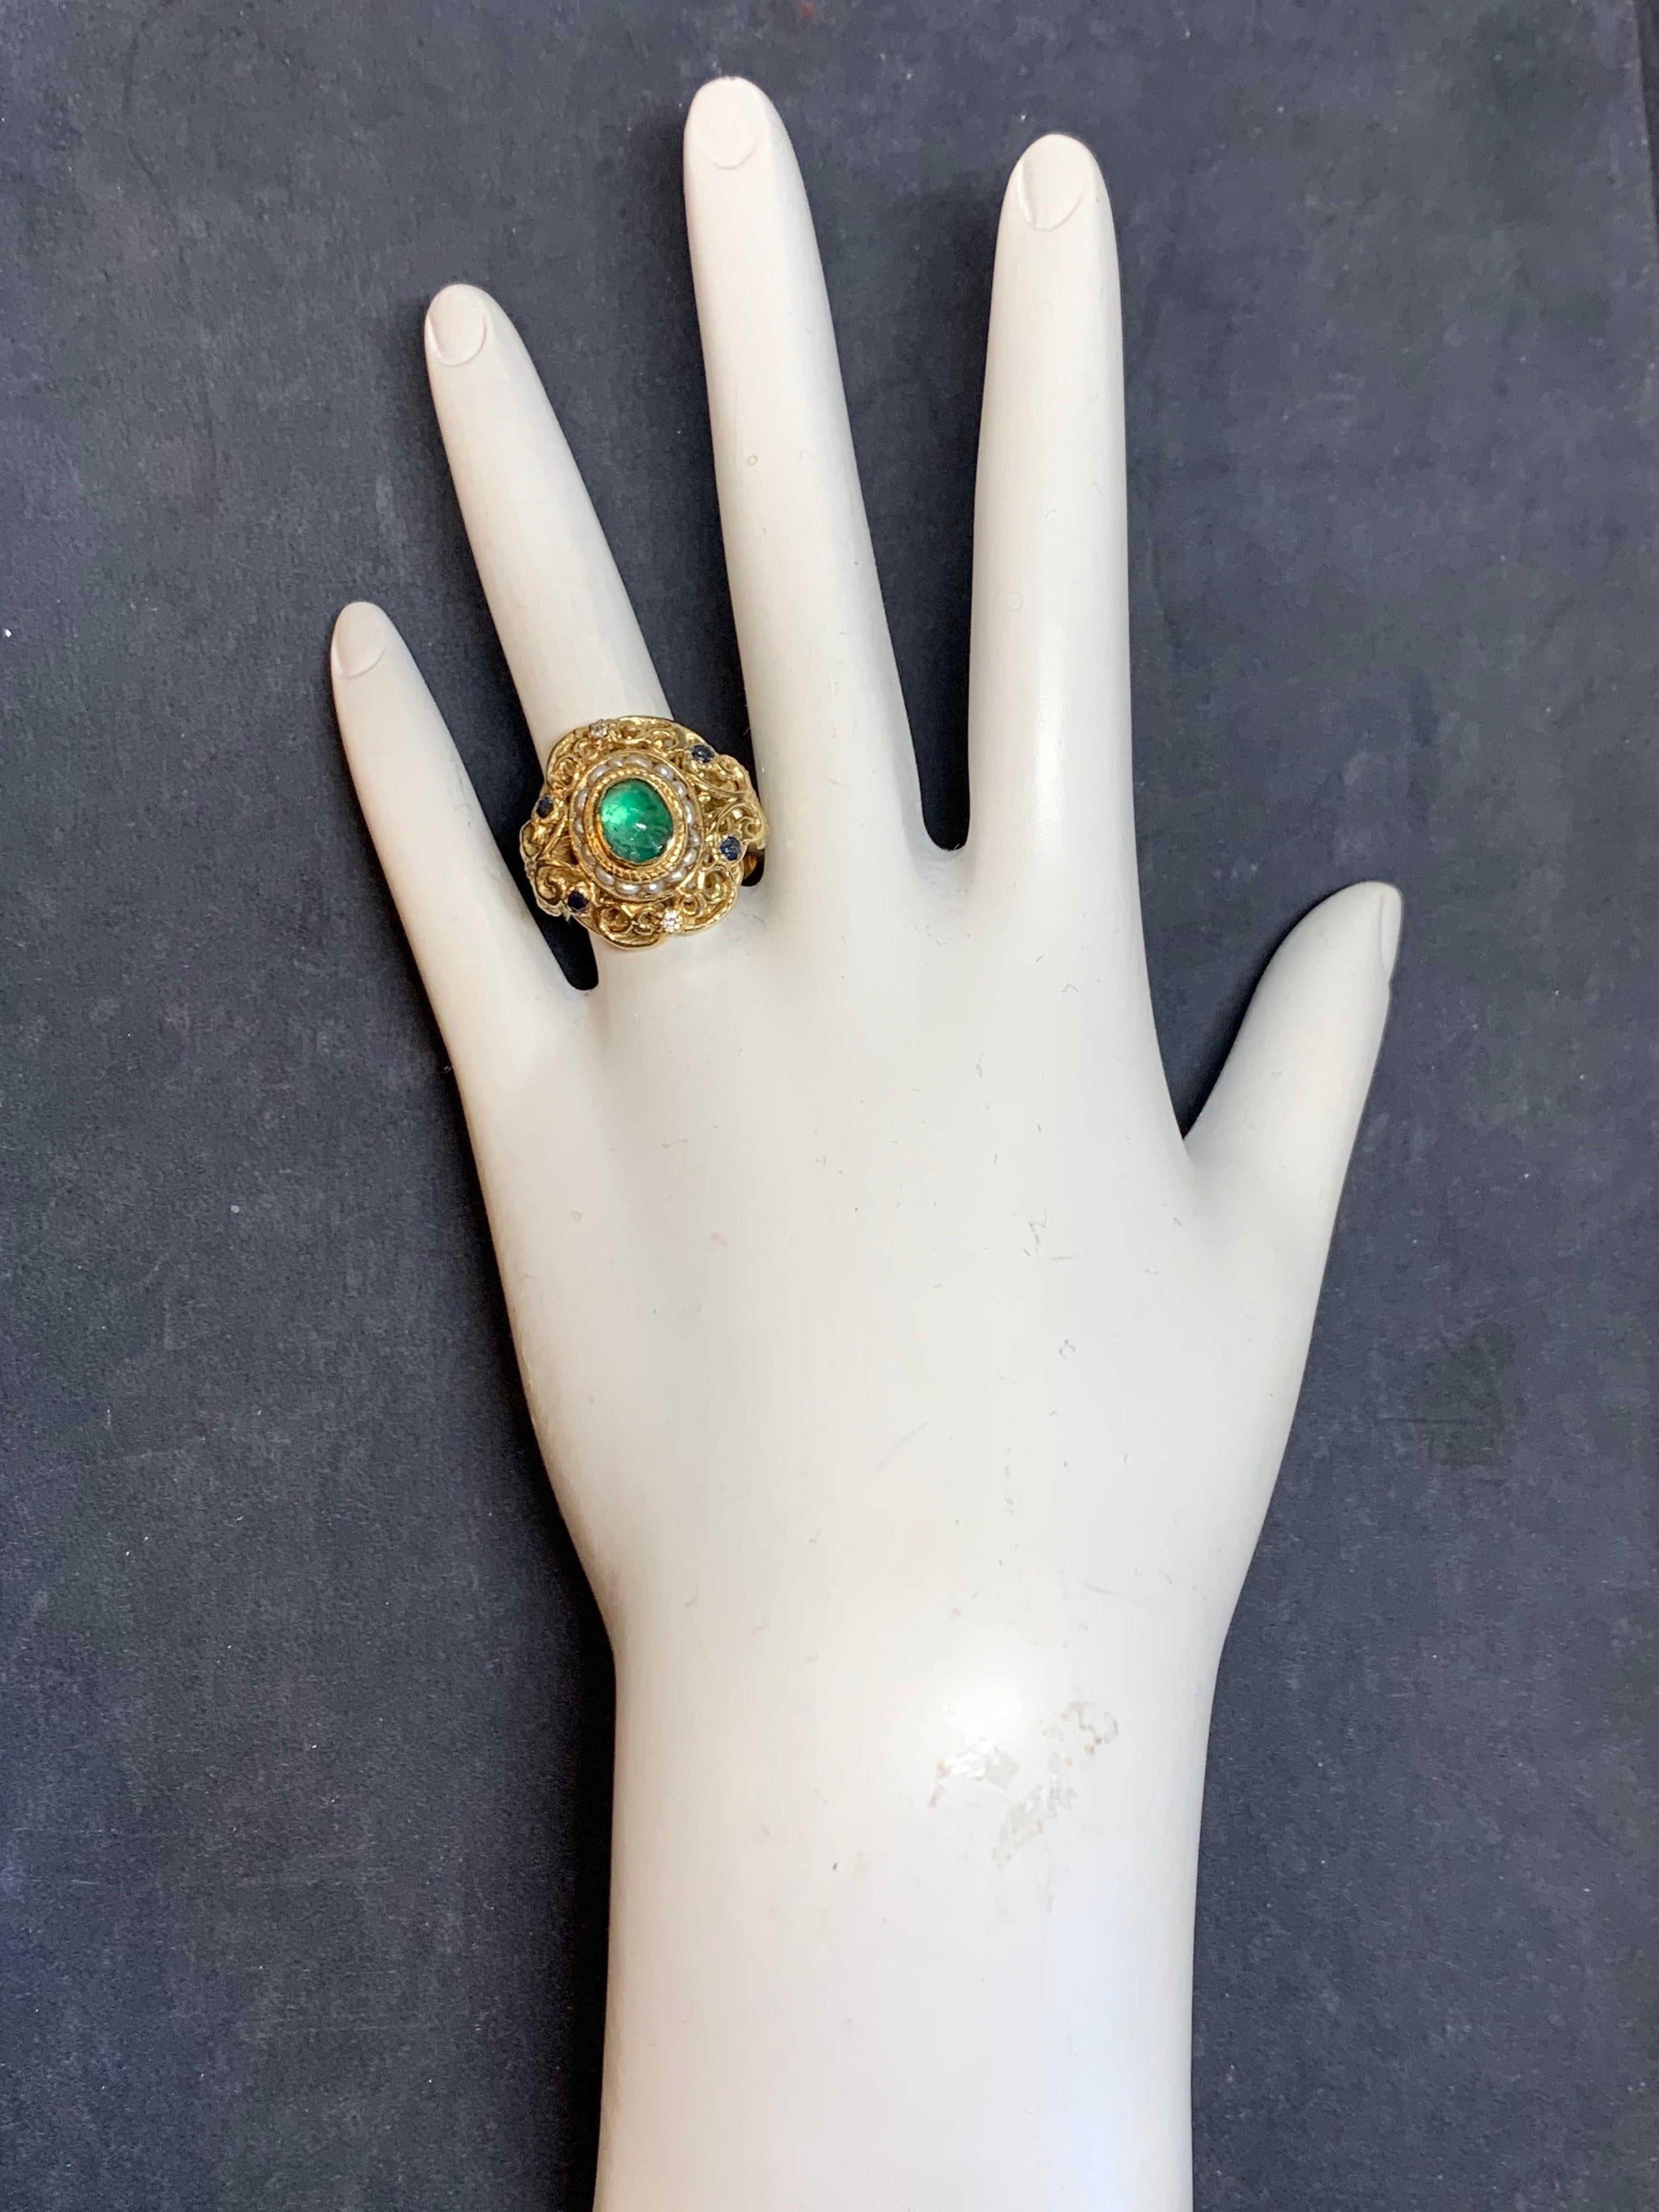 Retro 14k Gelbgold Cocktail-Ring mit etwa 2 Karat einschließlich einer natürlichen Smaragd Cabochon, Saphire, Diamanten und Perlen.

Die Mitte Cabochon natürlichen Smaragd misst etwa 7,8 x 5,5 und wiegt etwa 1,50 Karat.

Der Ring ist eine Größe 6